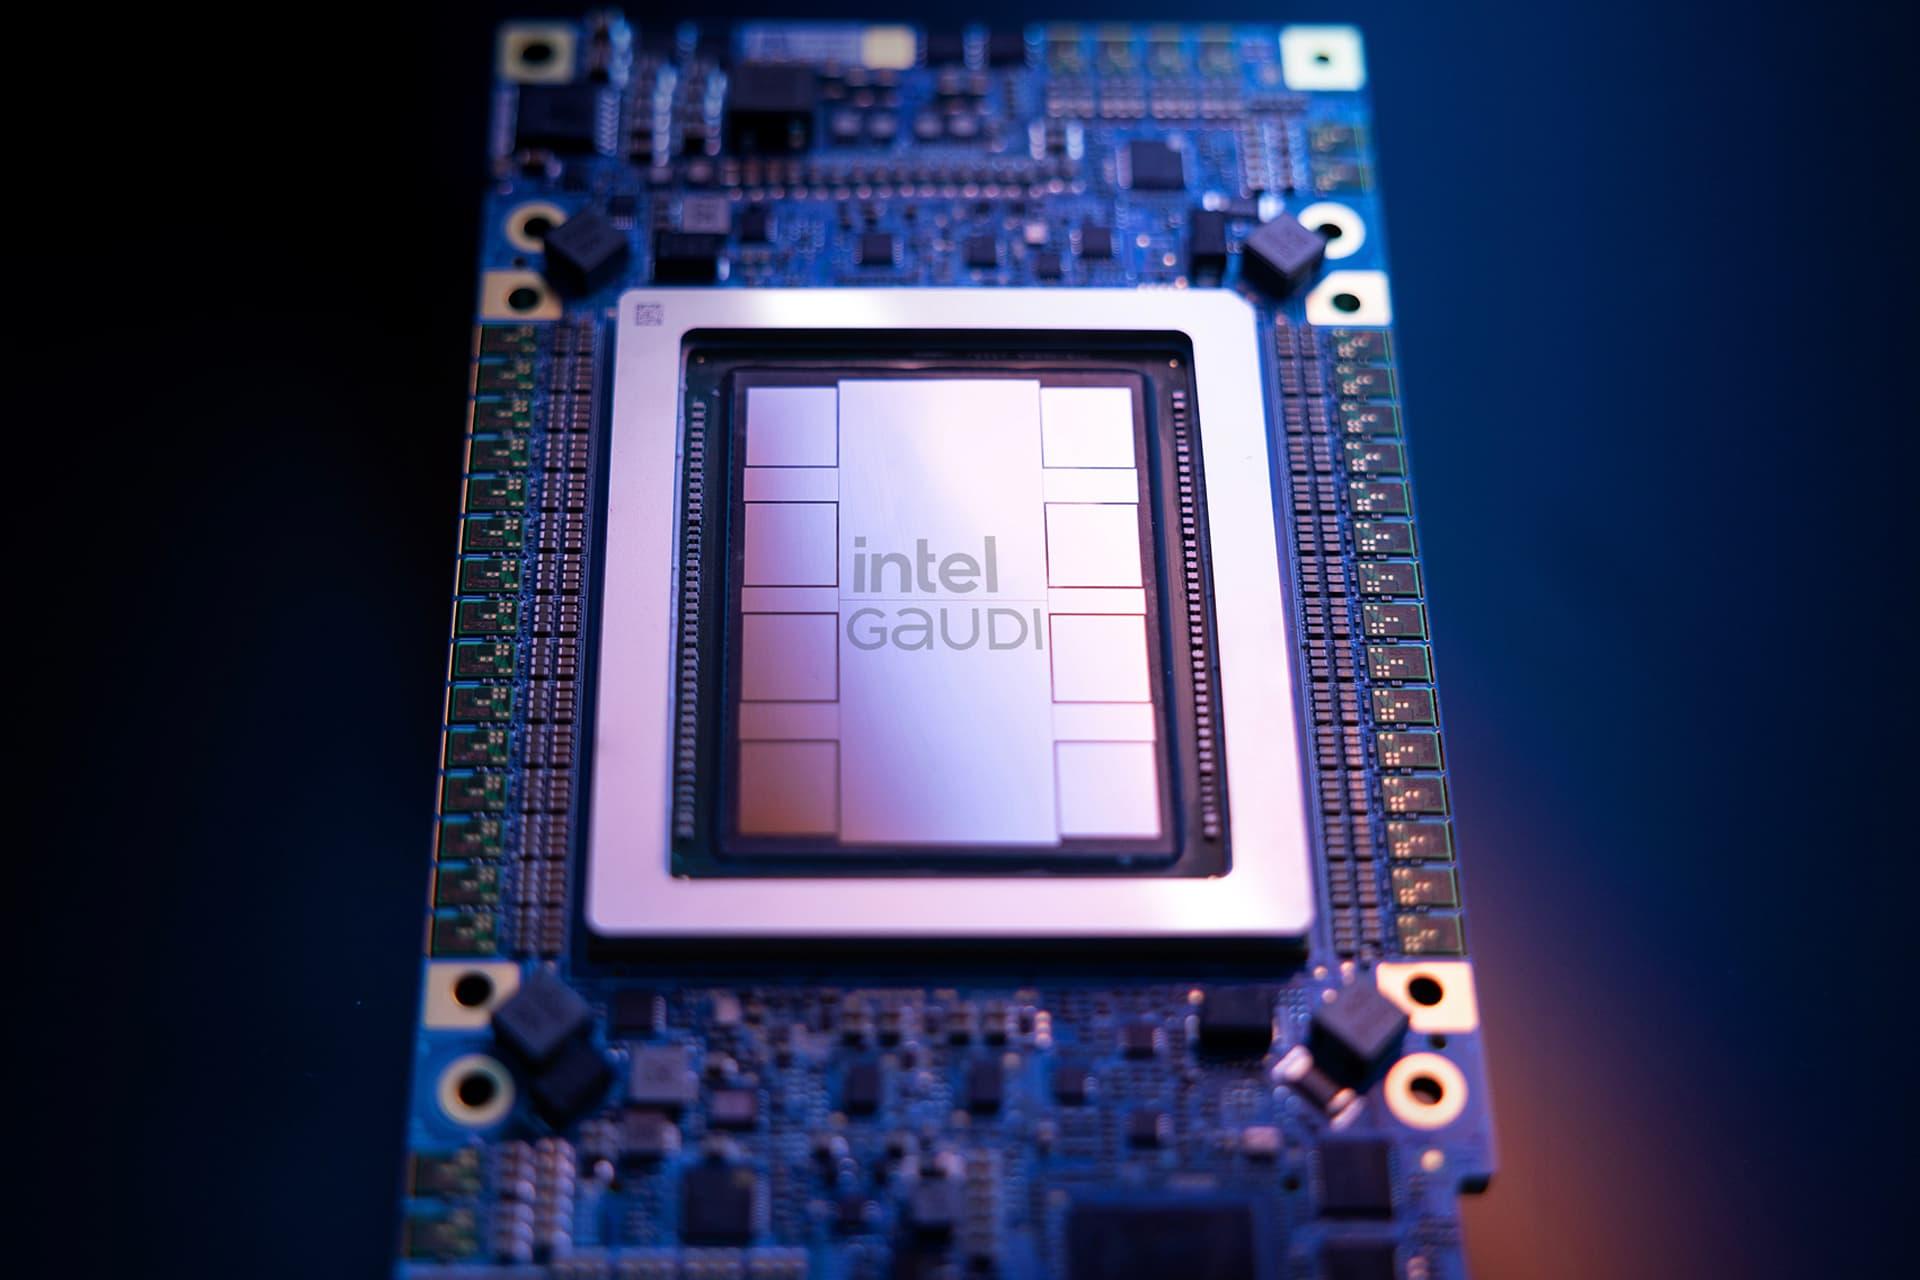 مرجع متخصصين ايران پردازنده هوش مصنوعي Intel Gaudi از نماي جلو